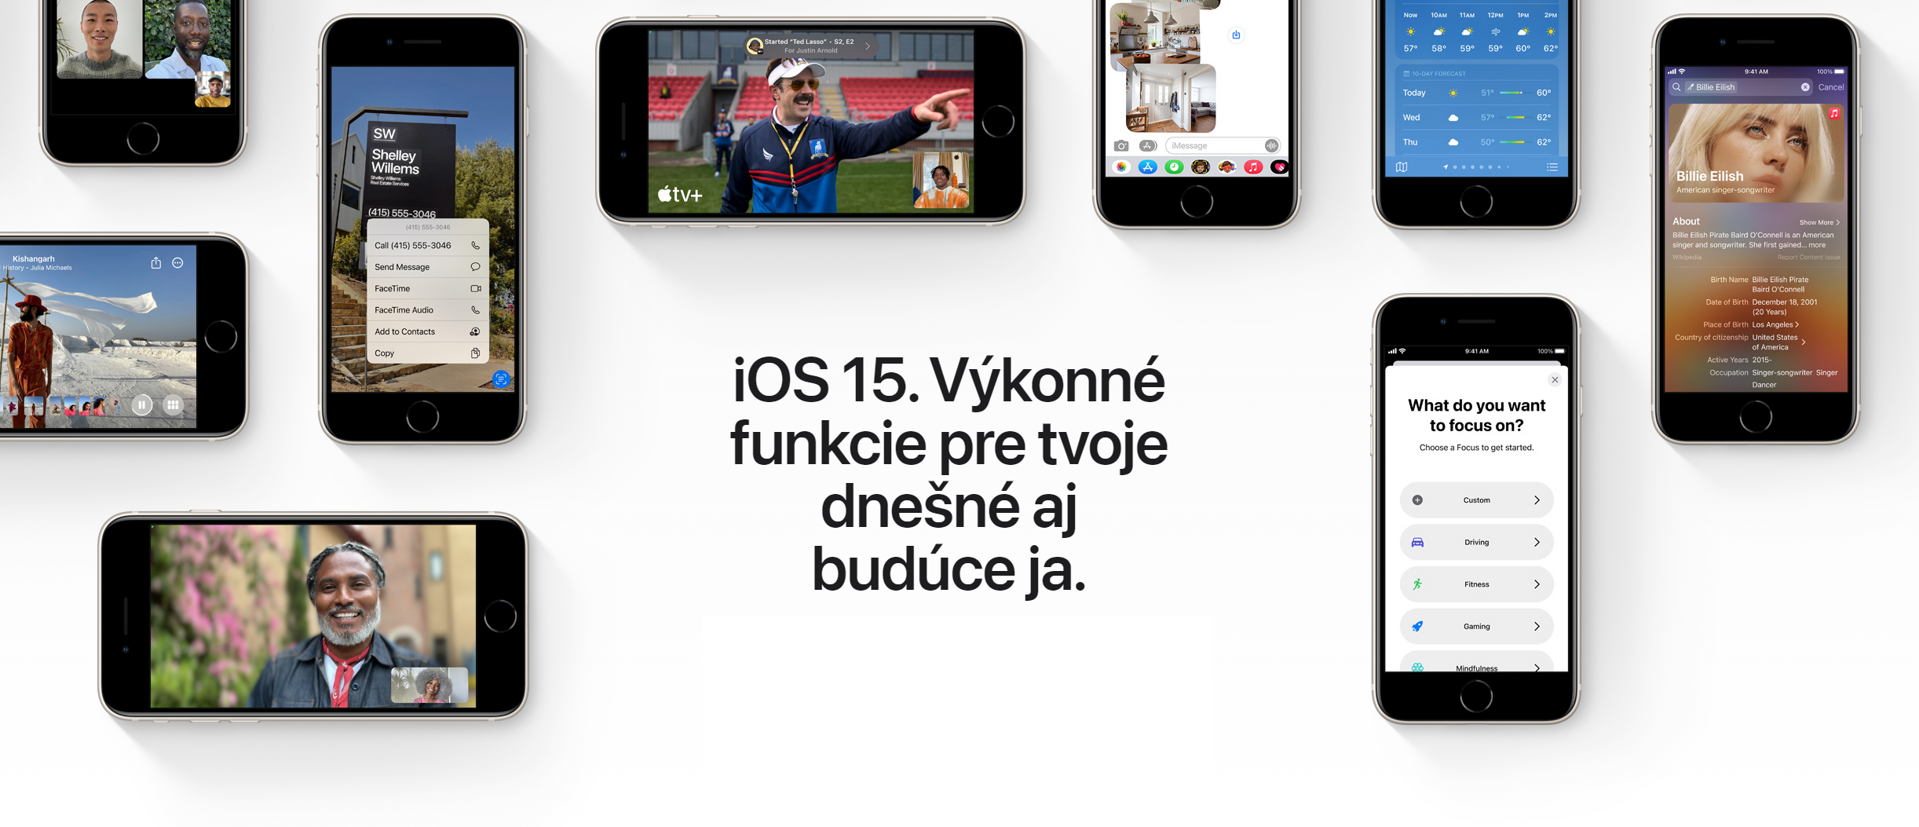 iOS 15 ITzoo 